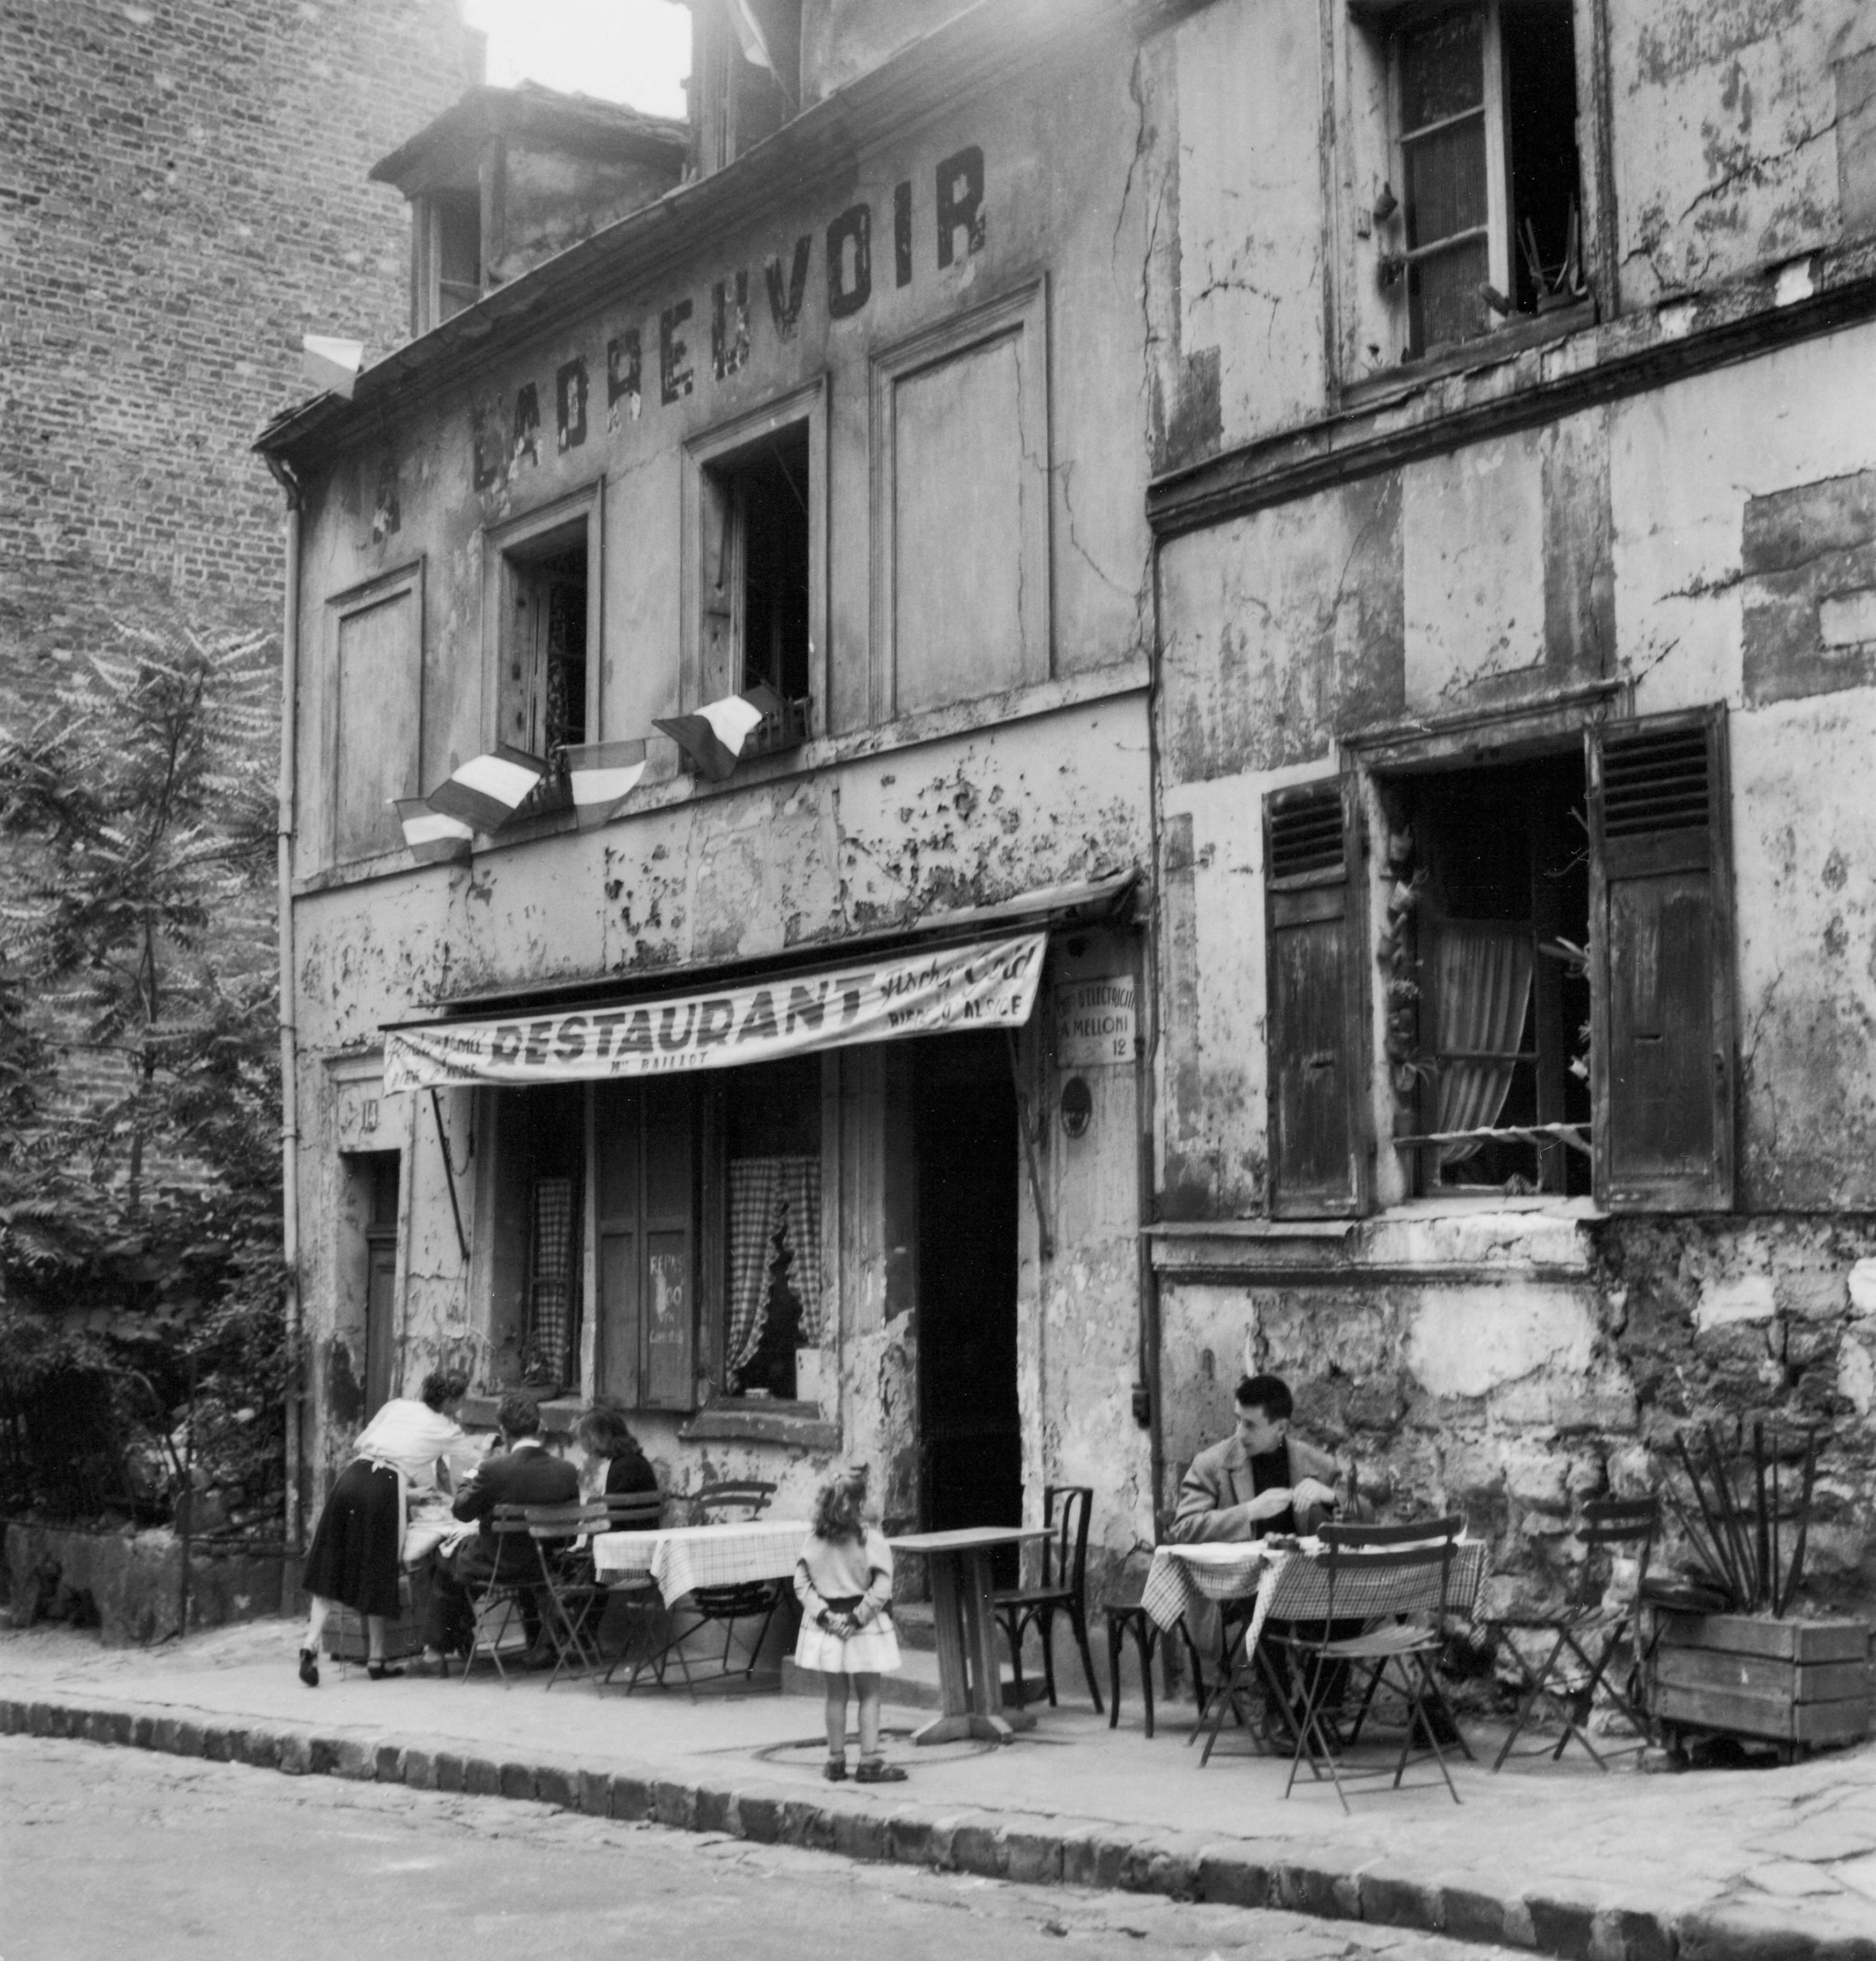 Restaurant, rue de l'Abreuvoir, Montmartre, Paris, 1950